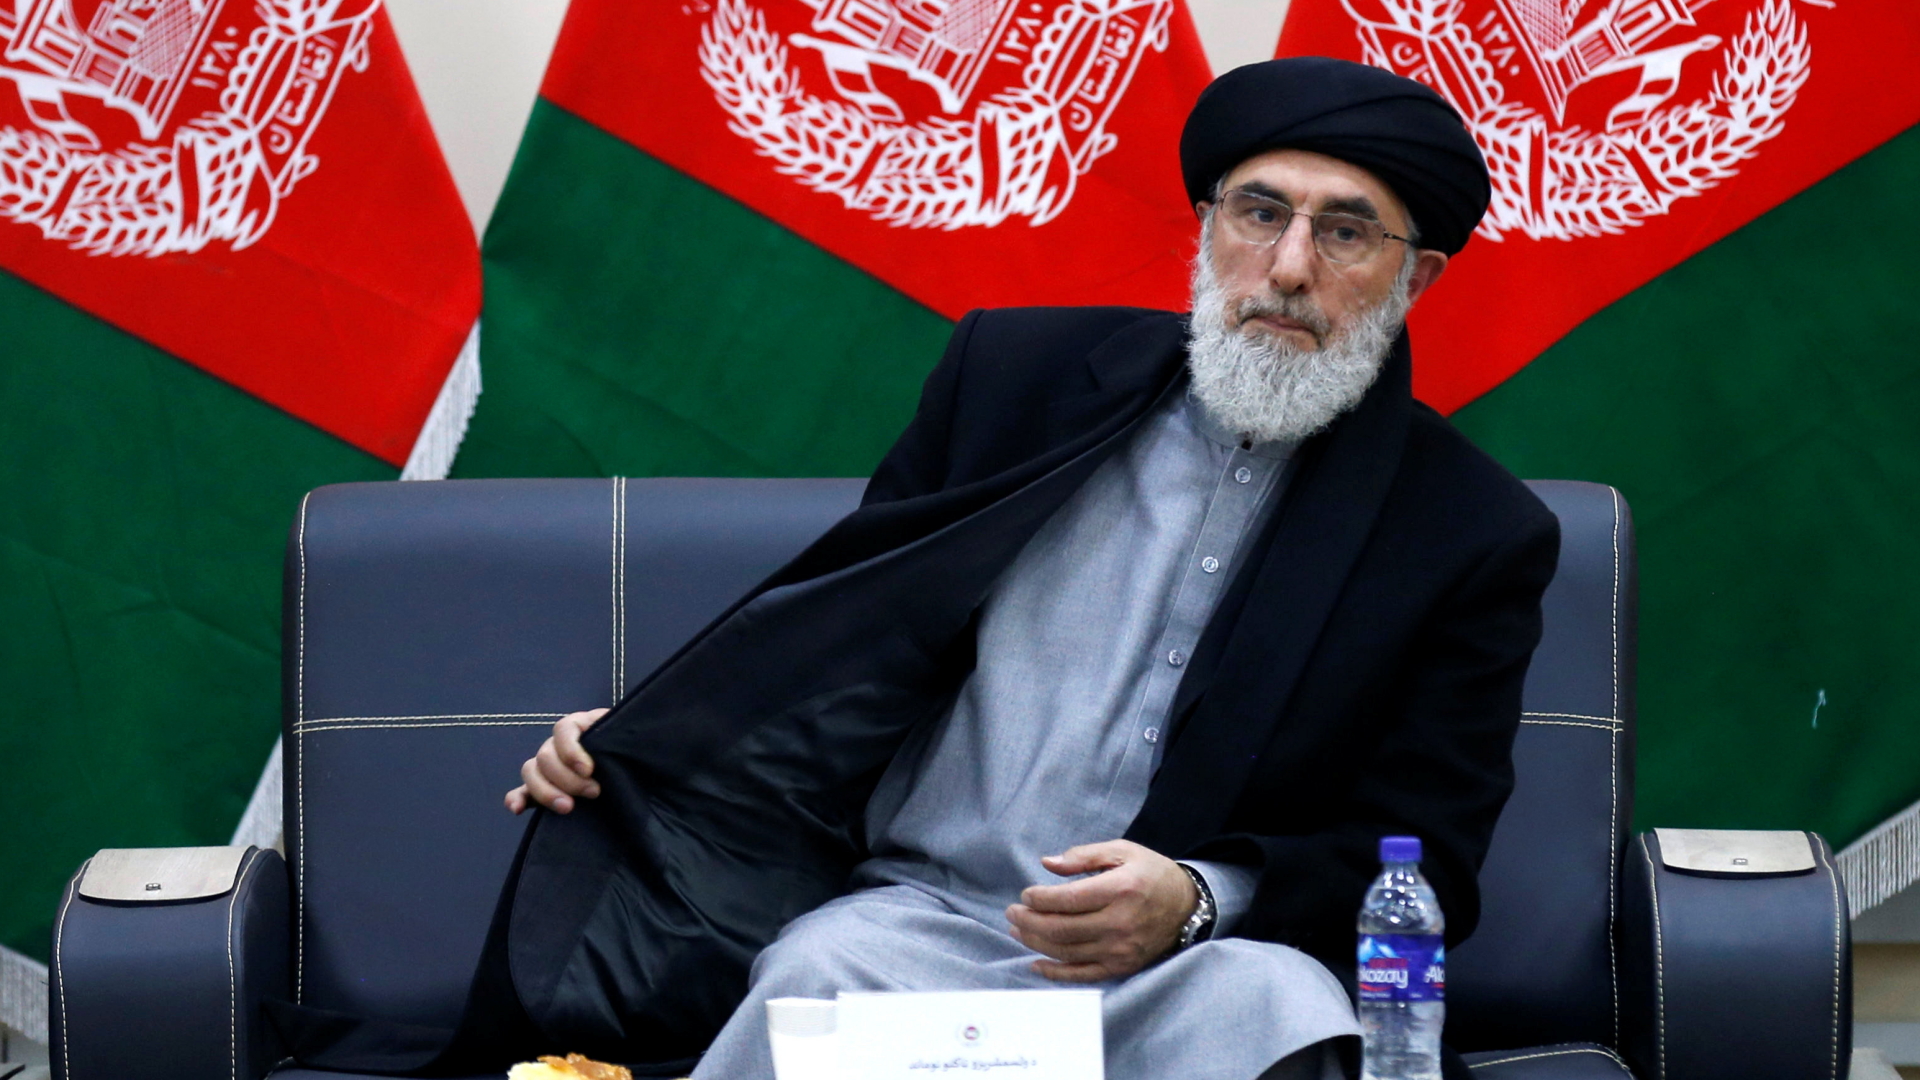 Der frühere Warlord Hekmatyar bei der Registrierung zum Präsidentschaftskandidaten | REUTERS